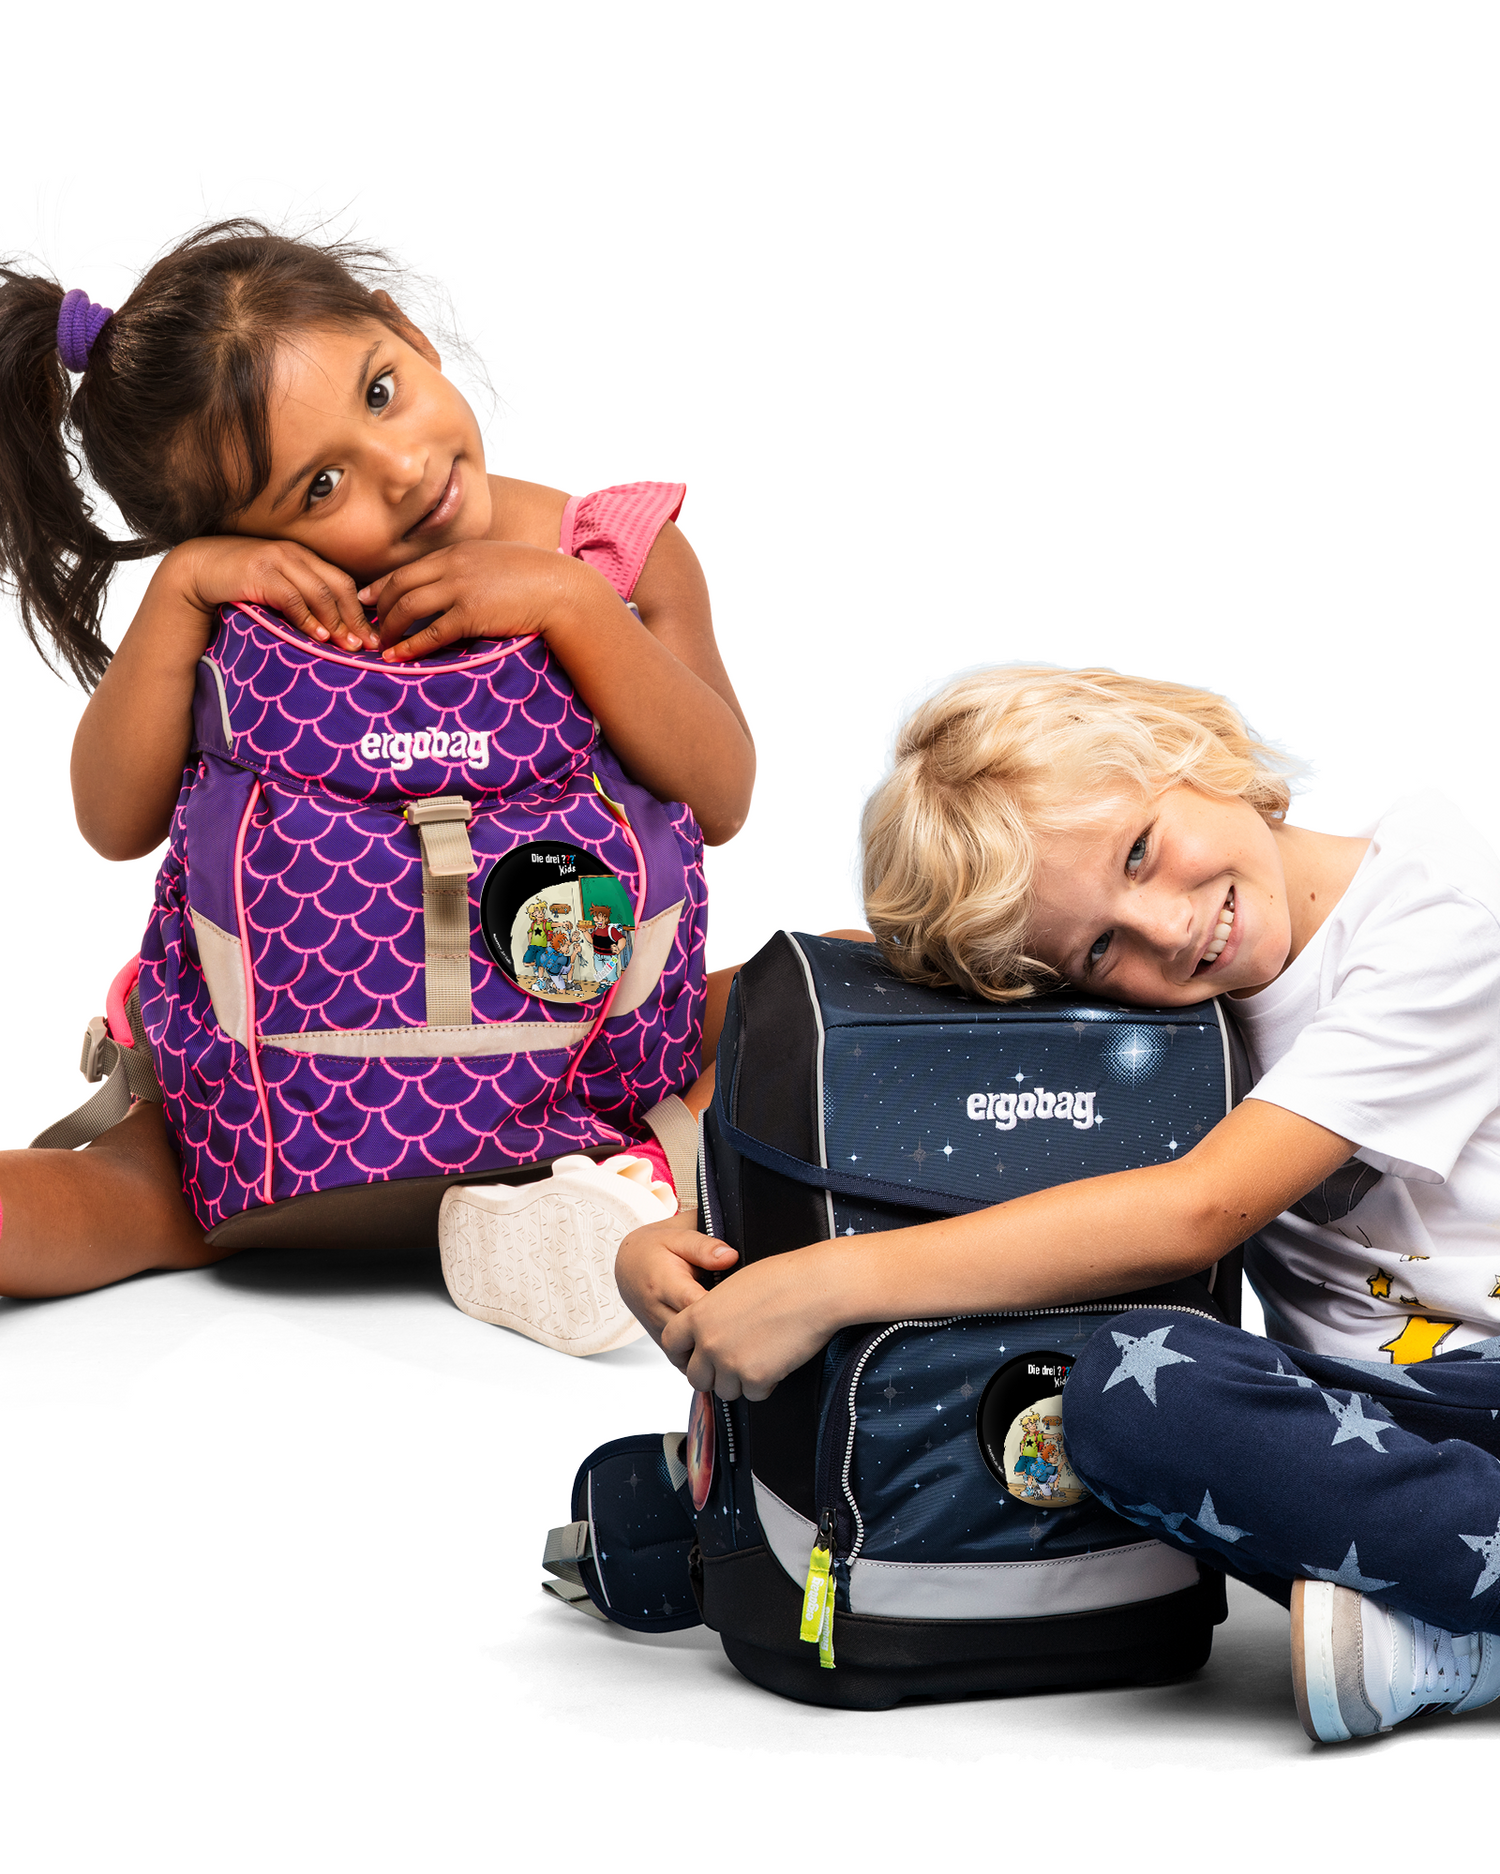 Die Drei Fragezeichen Klassenraum Klettie: Am Rucksack von Schulkindern